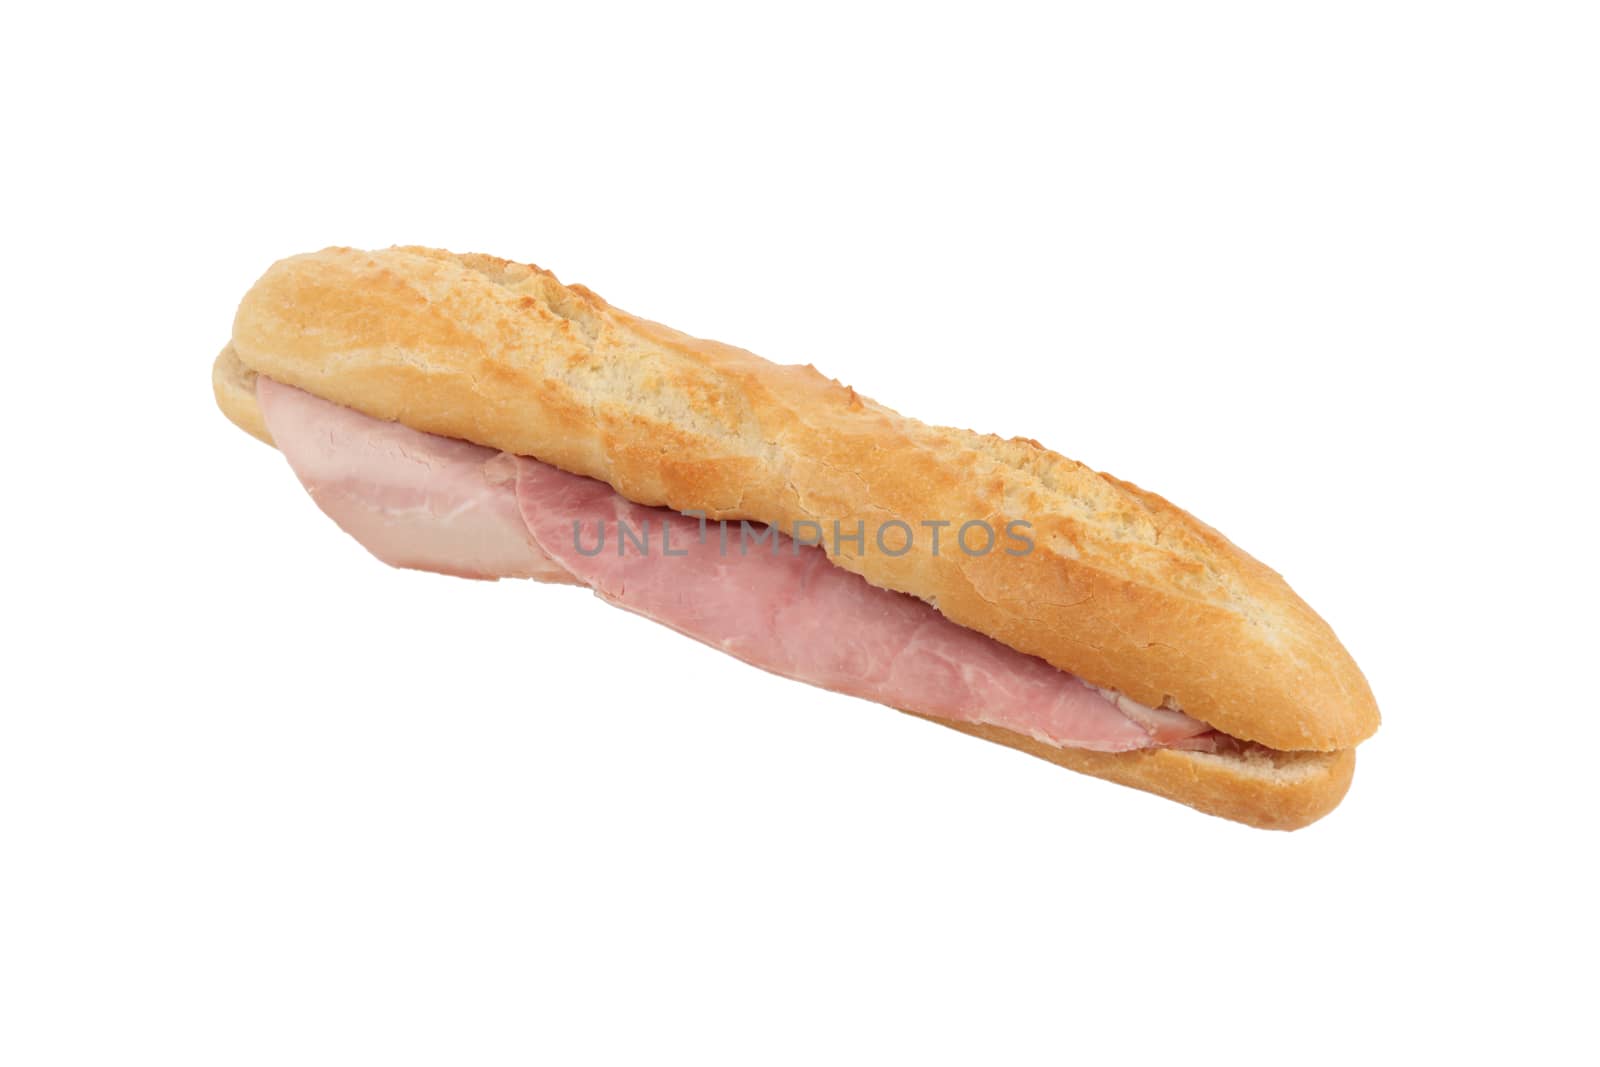 Baguette ham sandwich